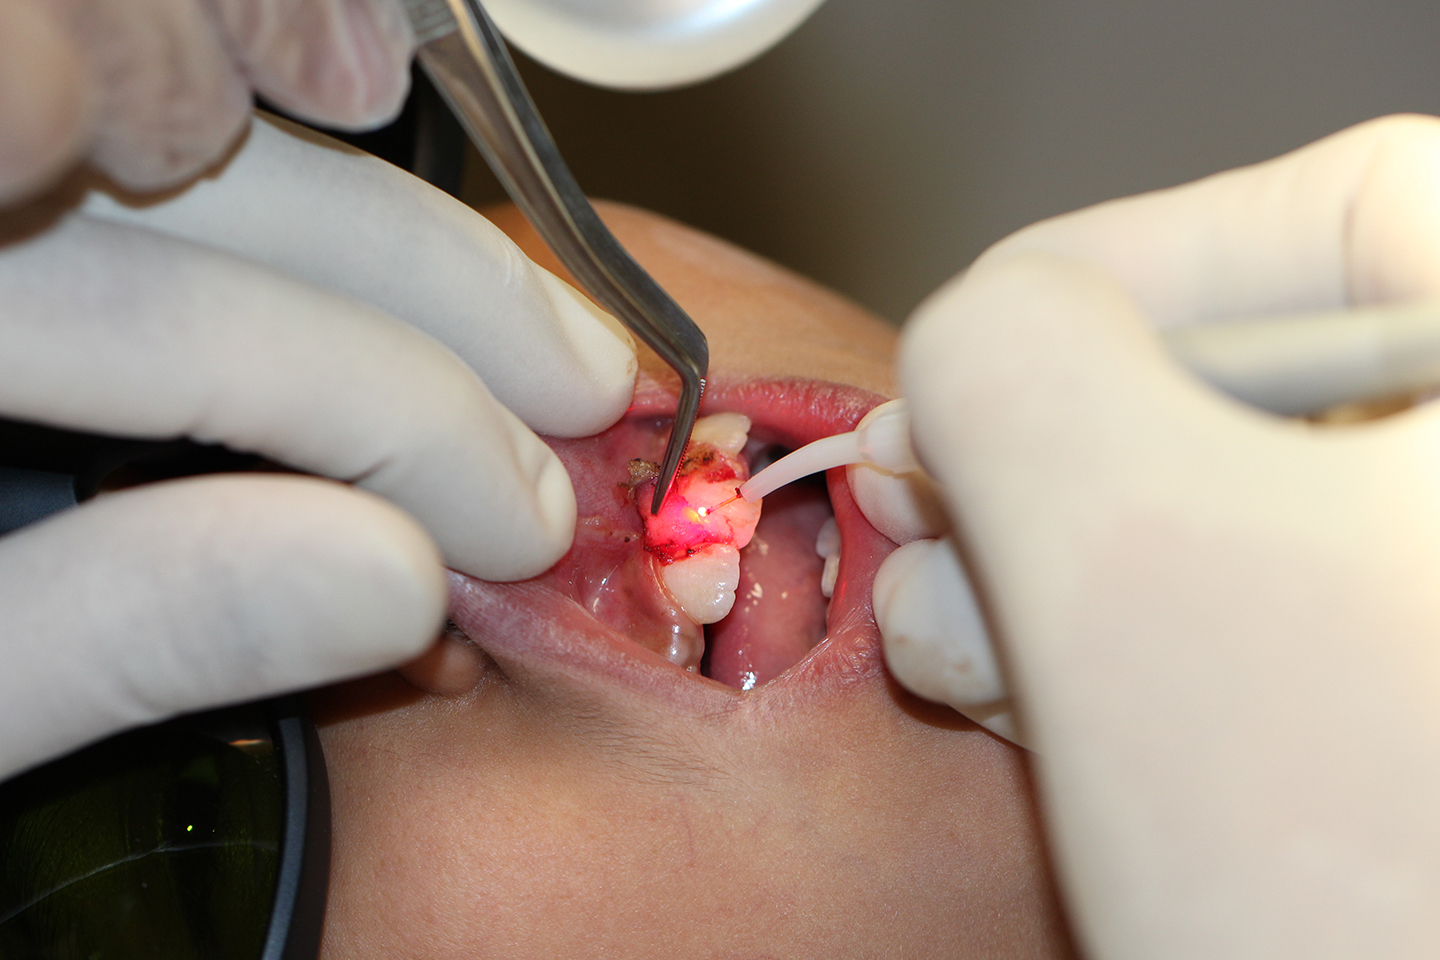 کلینیک تخصصی دندانپزشکی جهاددانشگاهی مشهد